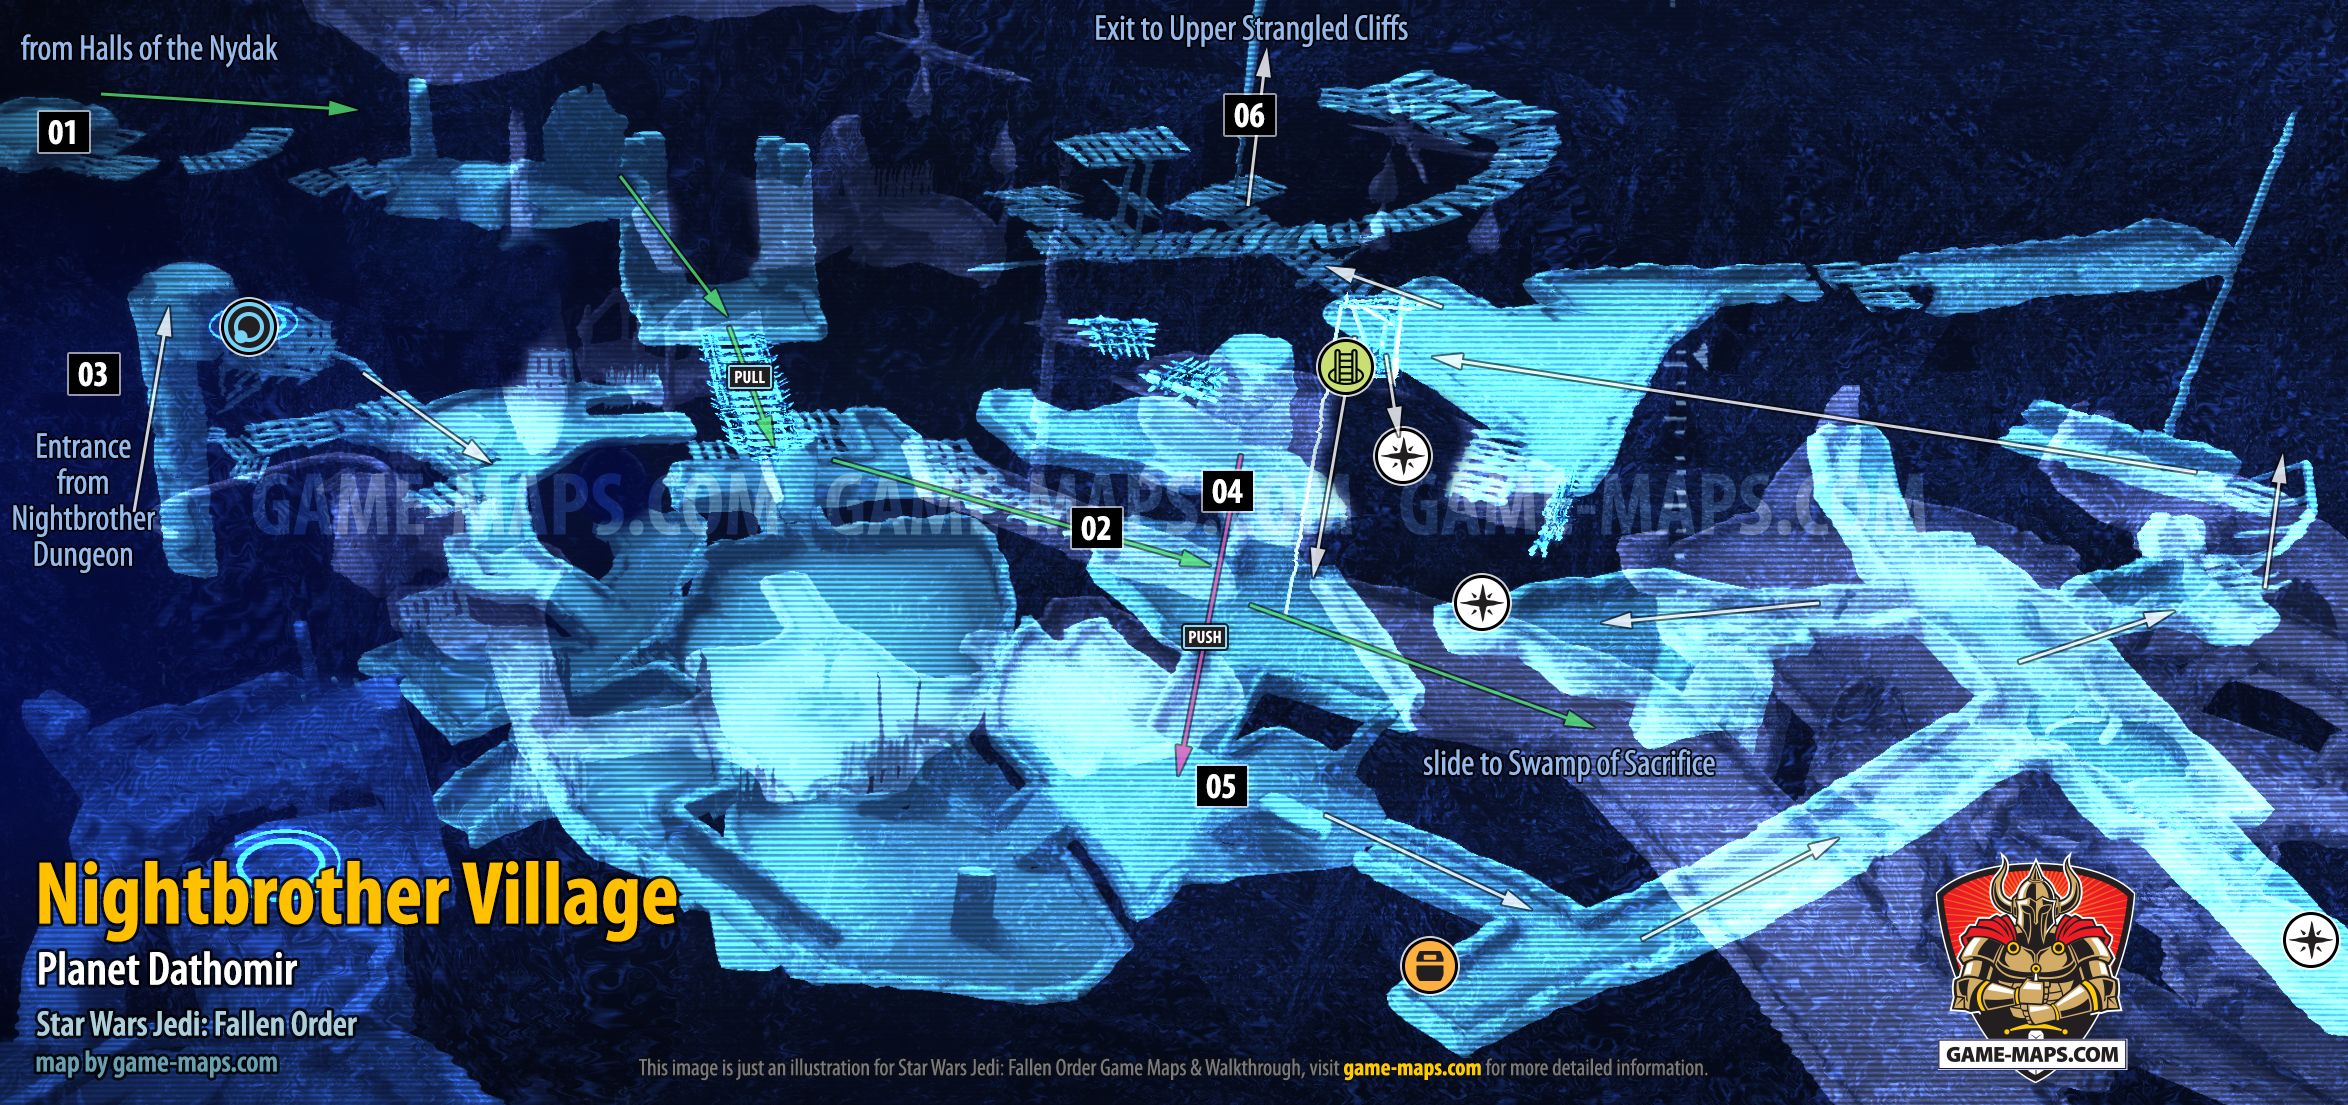 Nightbrother Village Map, Planet Dathomir for Star Wars Jedi Fallen Order